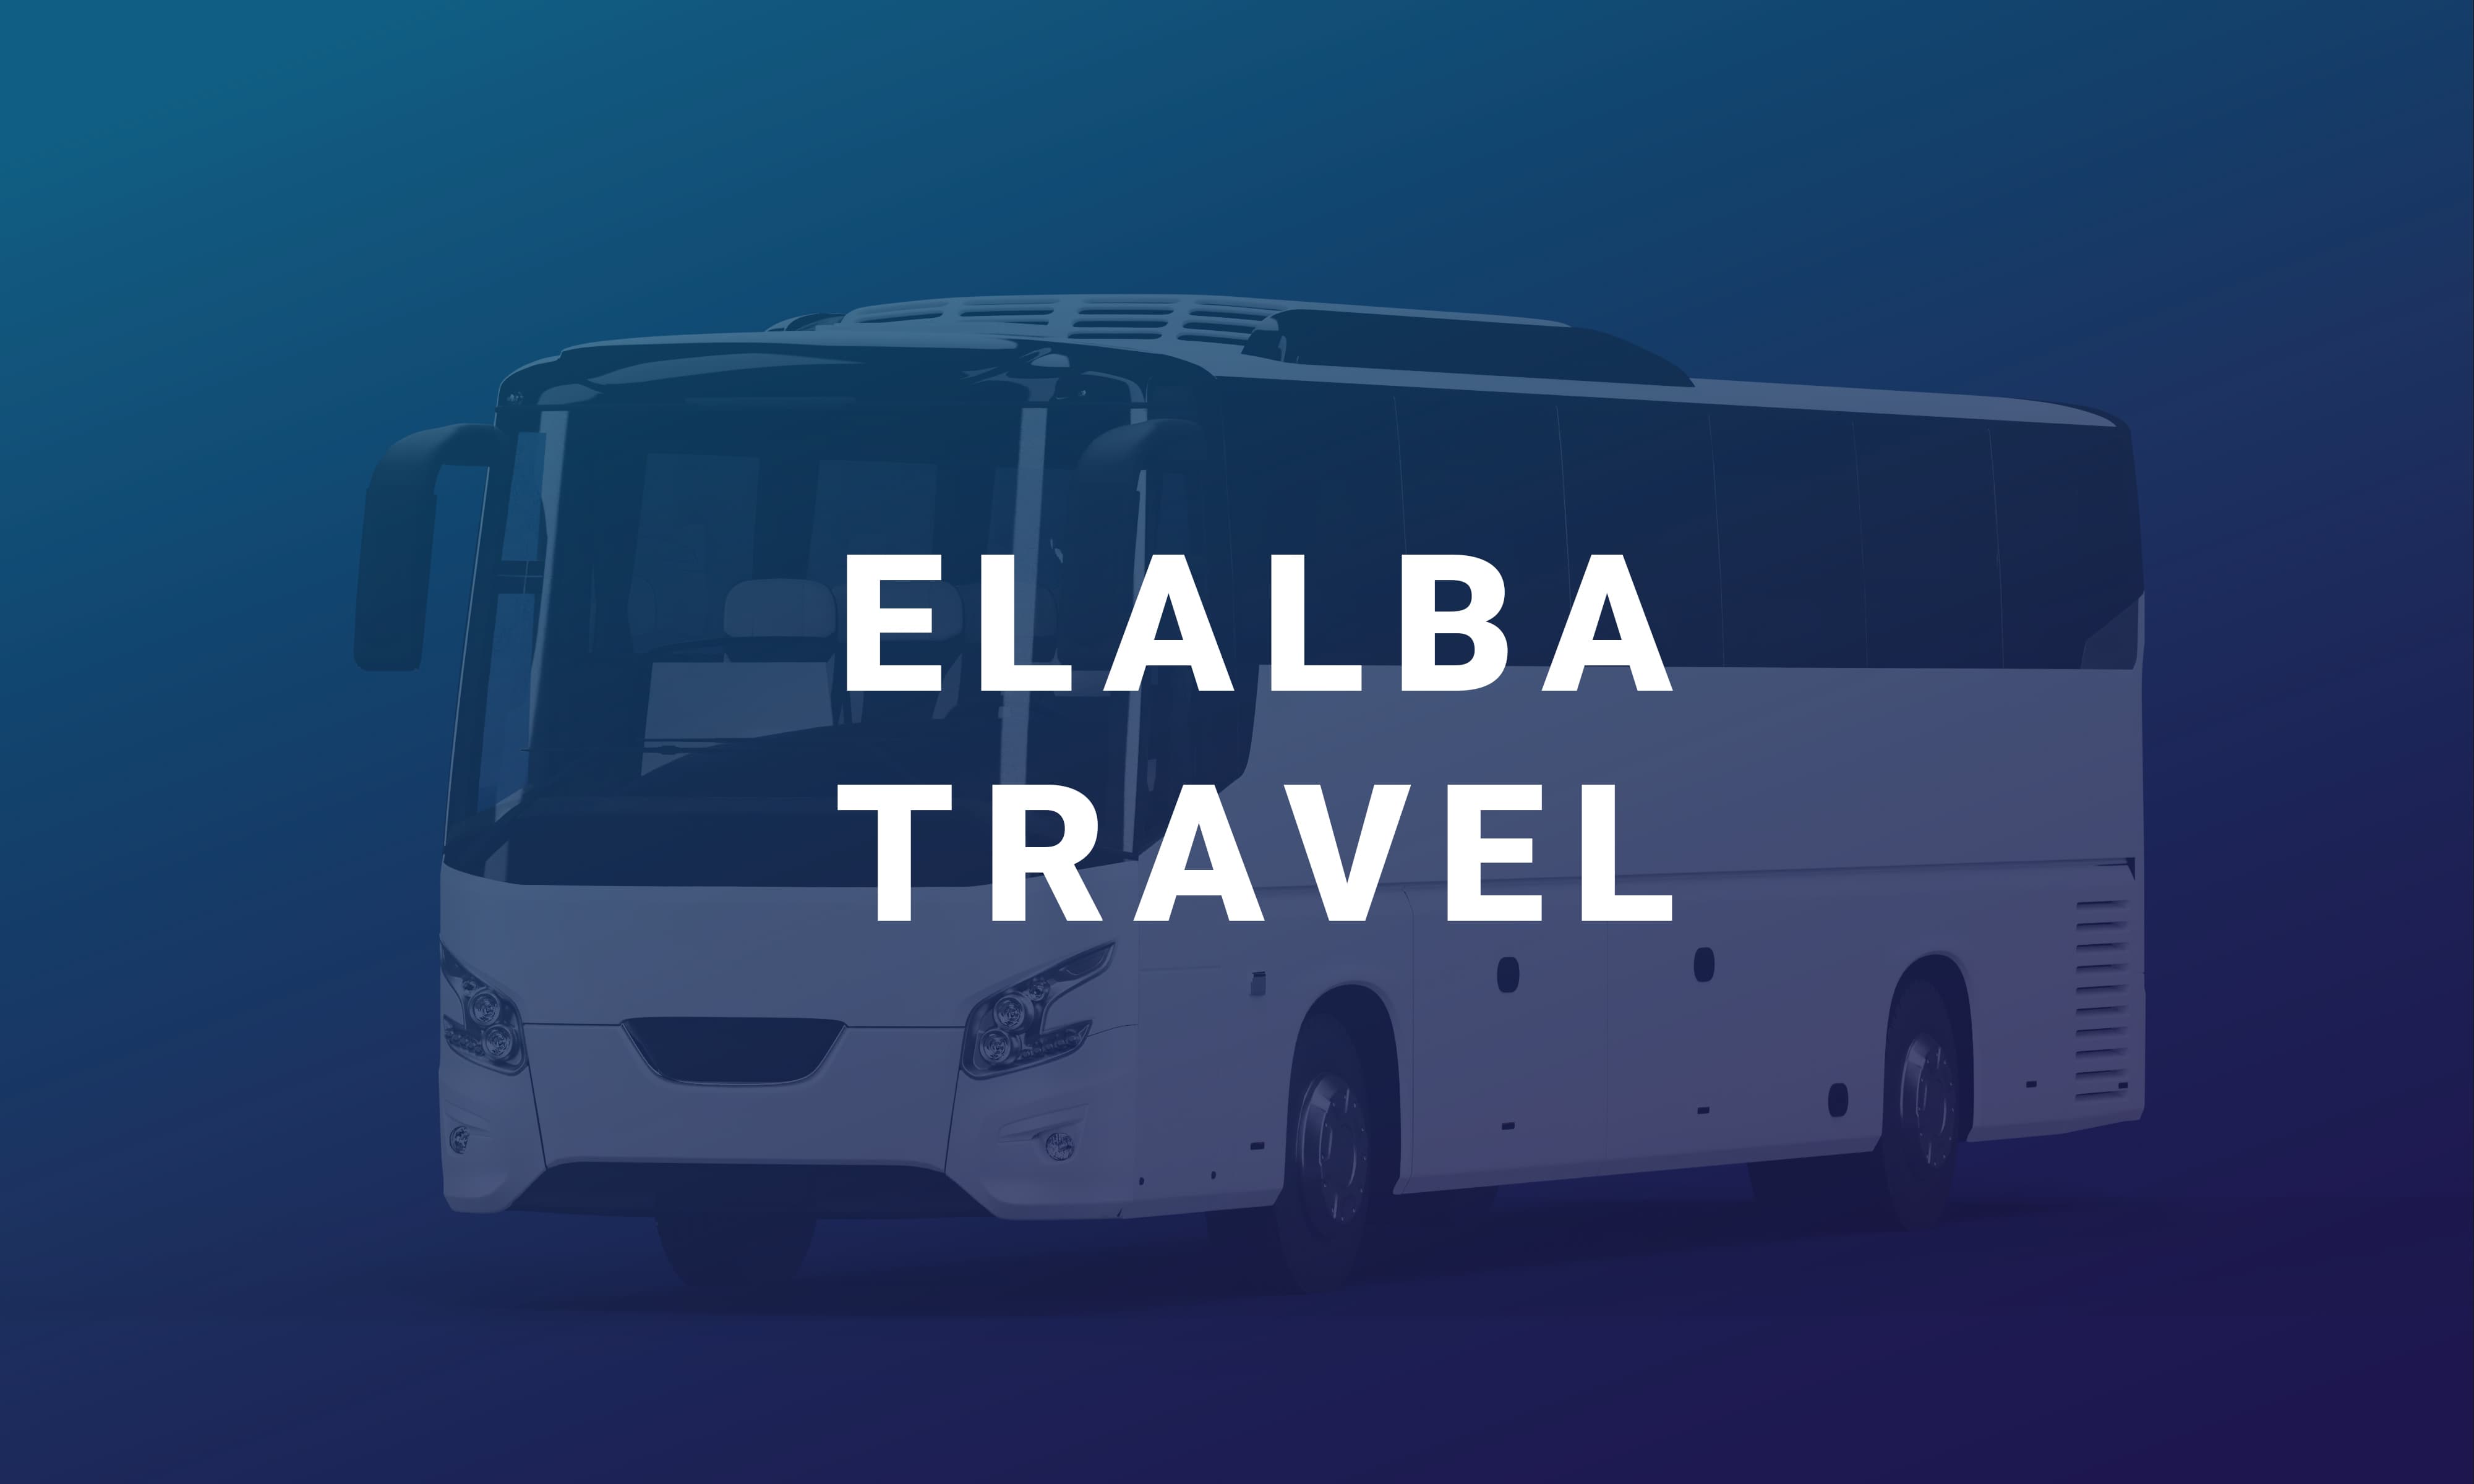 Elalba es una línea interurbana con base en Elbasan. Ofrece un servicio de transporte todos los días por la carretera Korçë - Elbasan y Elbasan - Korçë.